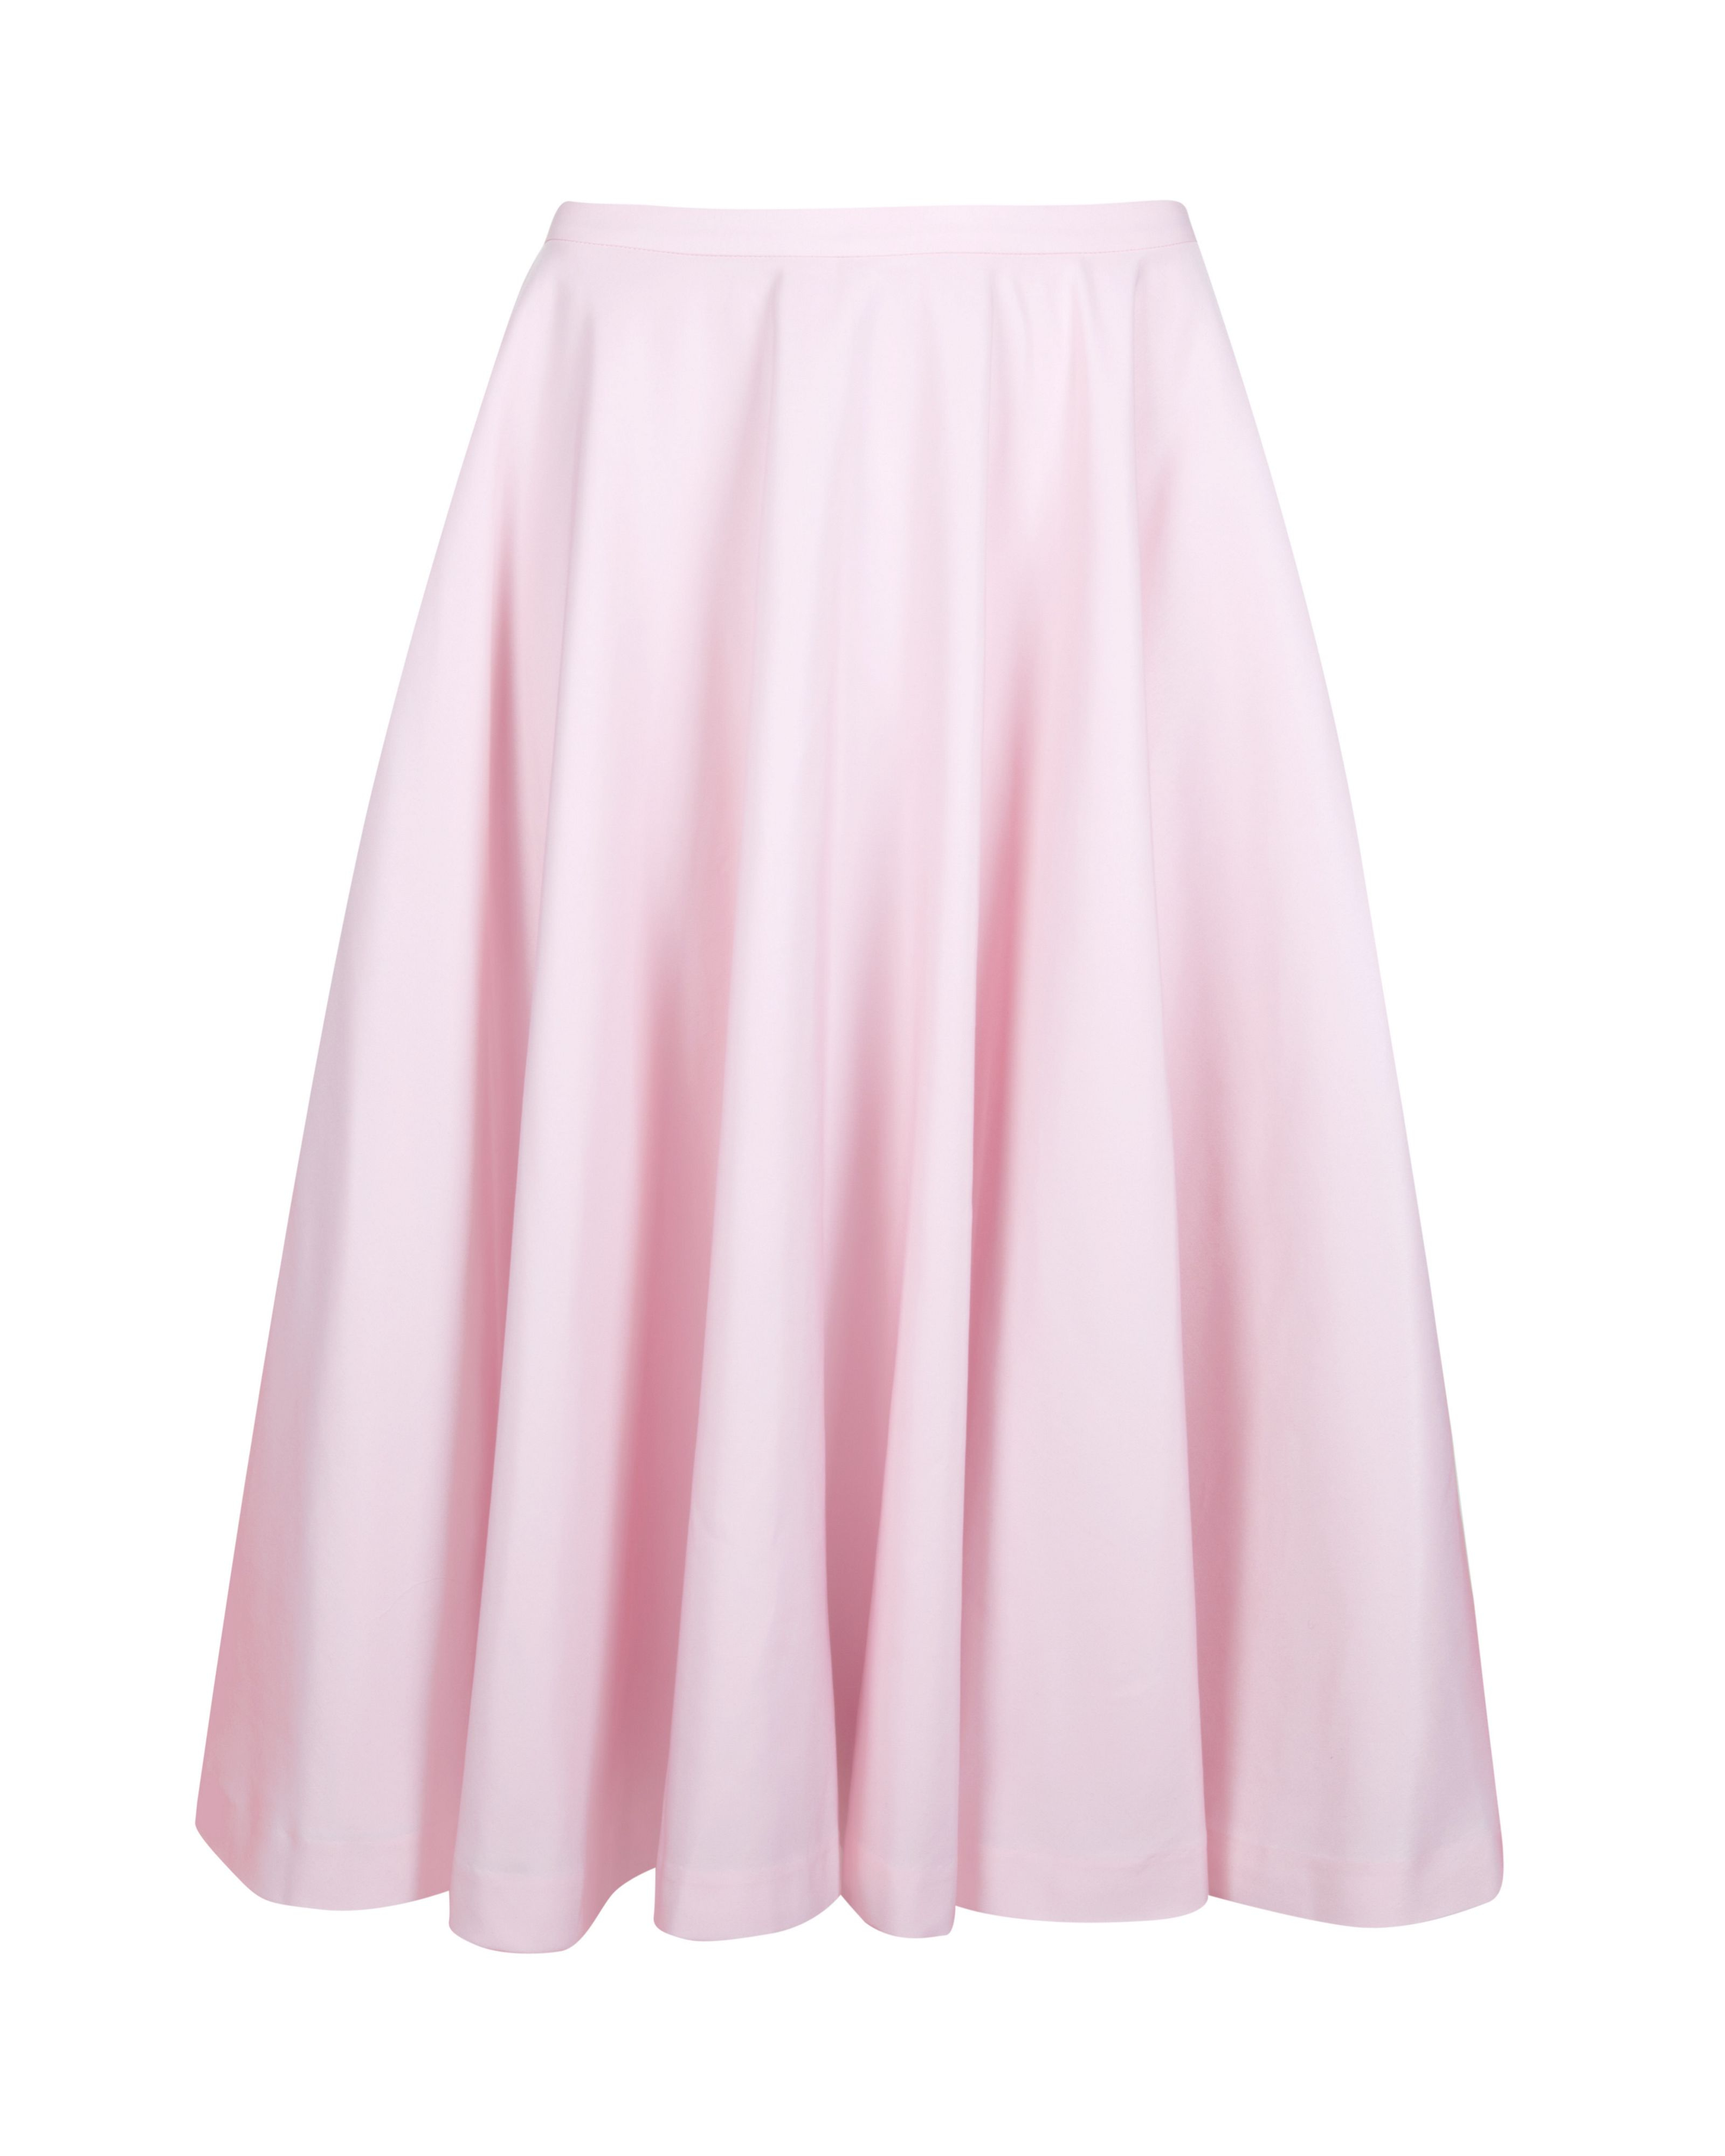 Lyst - Ted Baker Rosiah Full Ballet Skirt in Pink